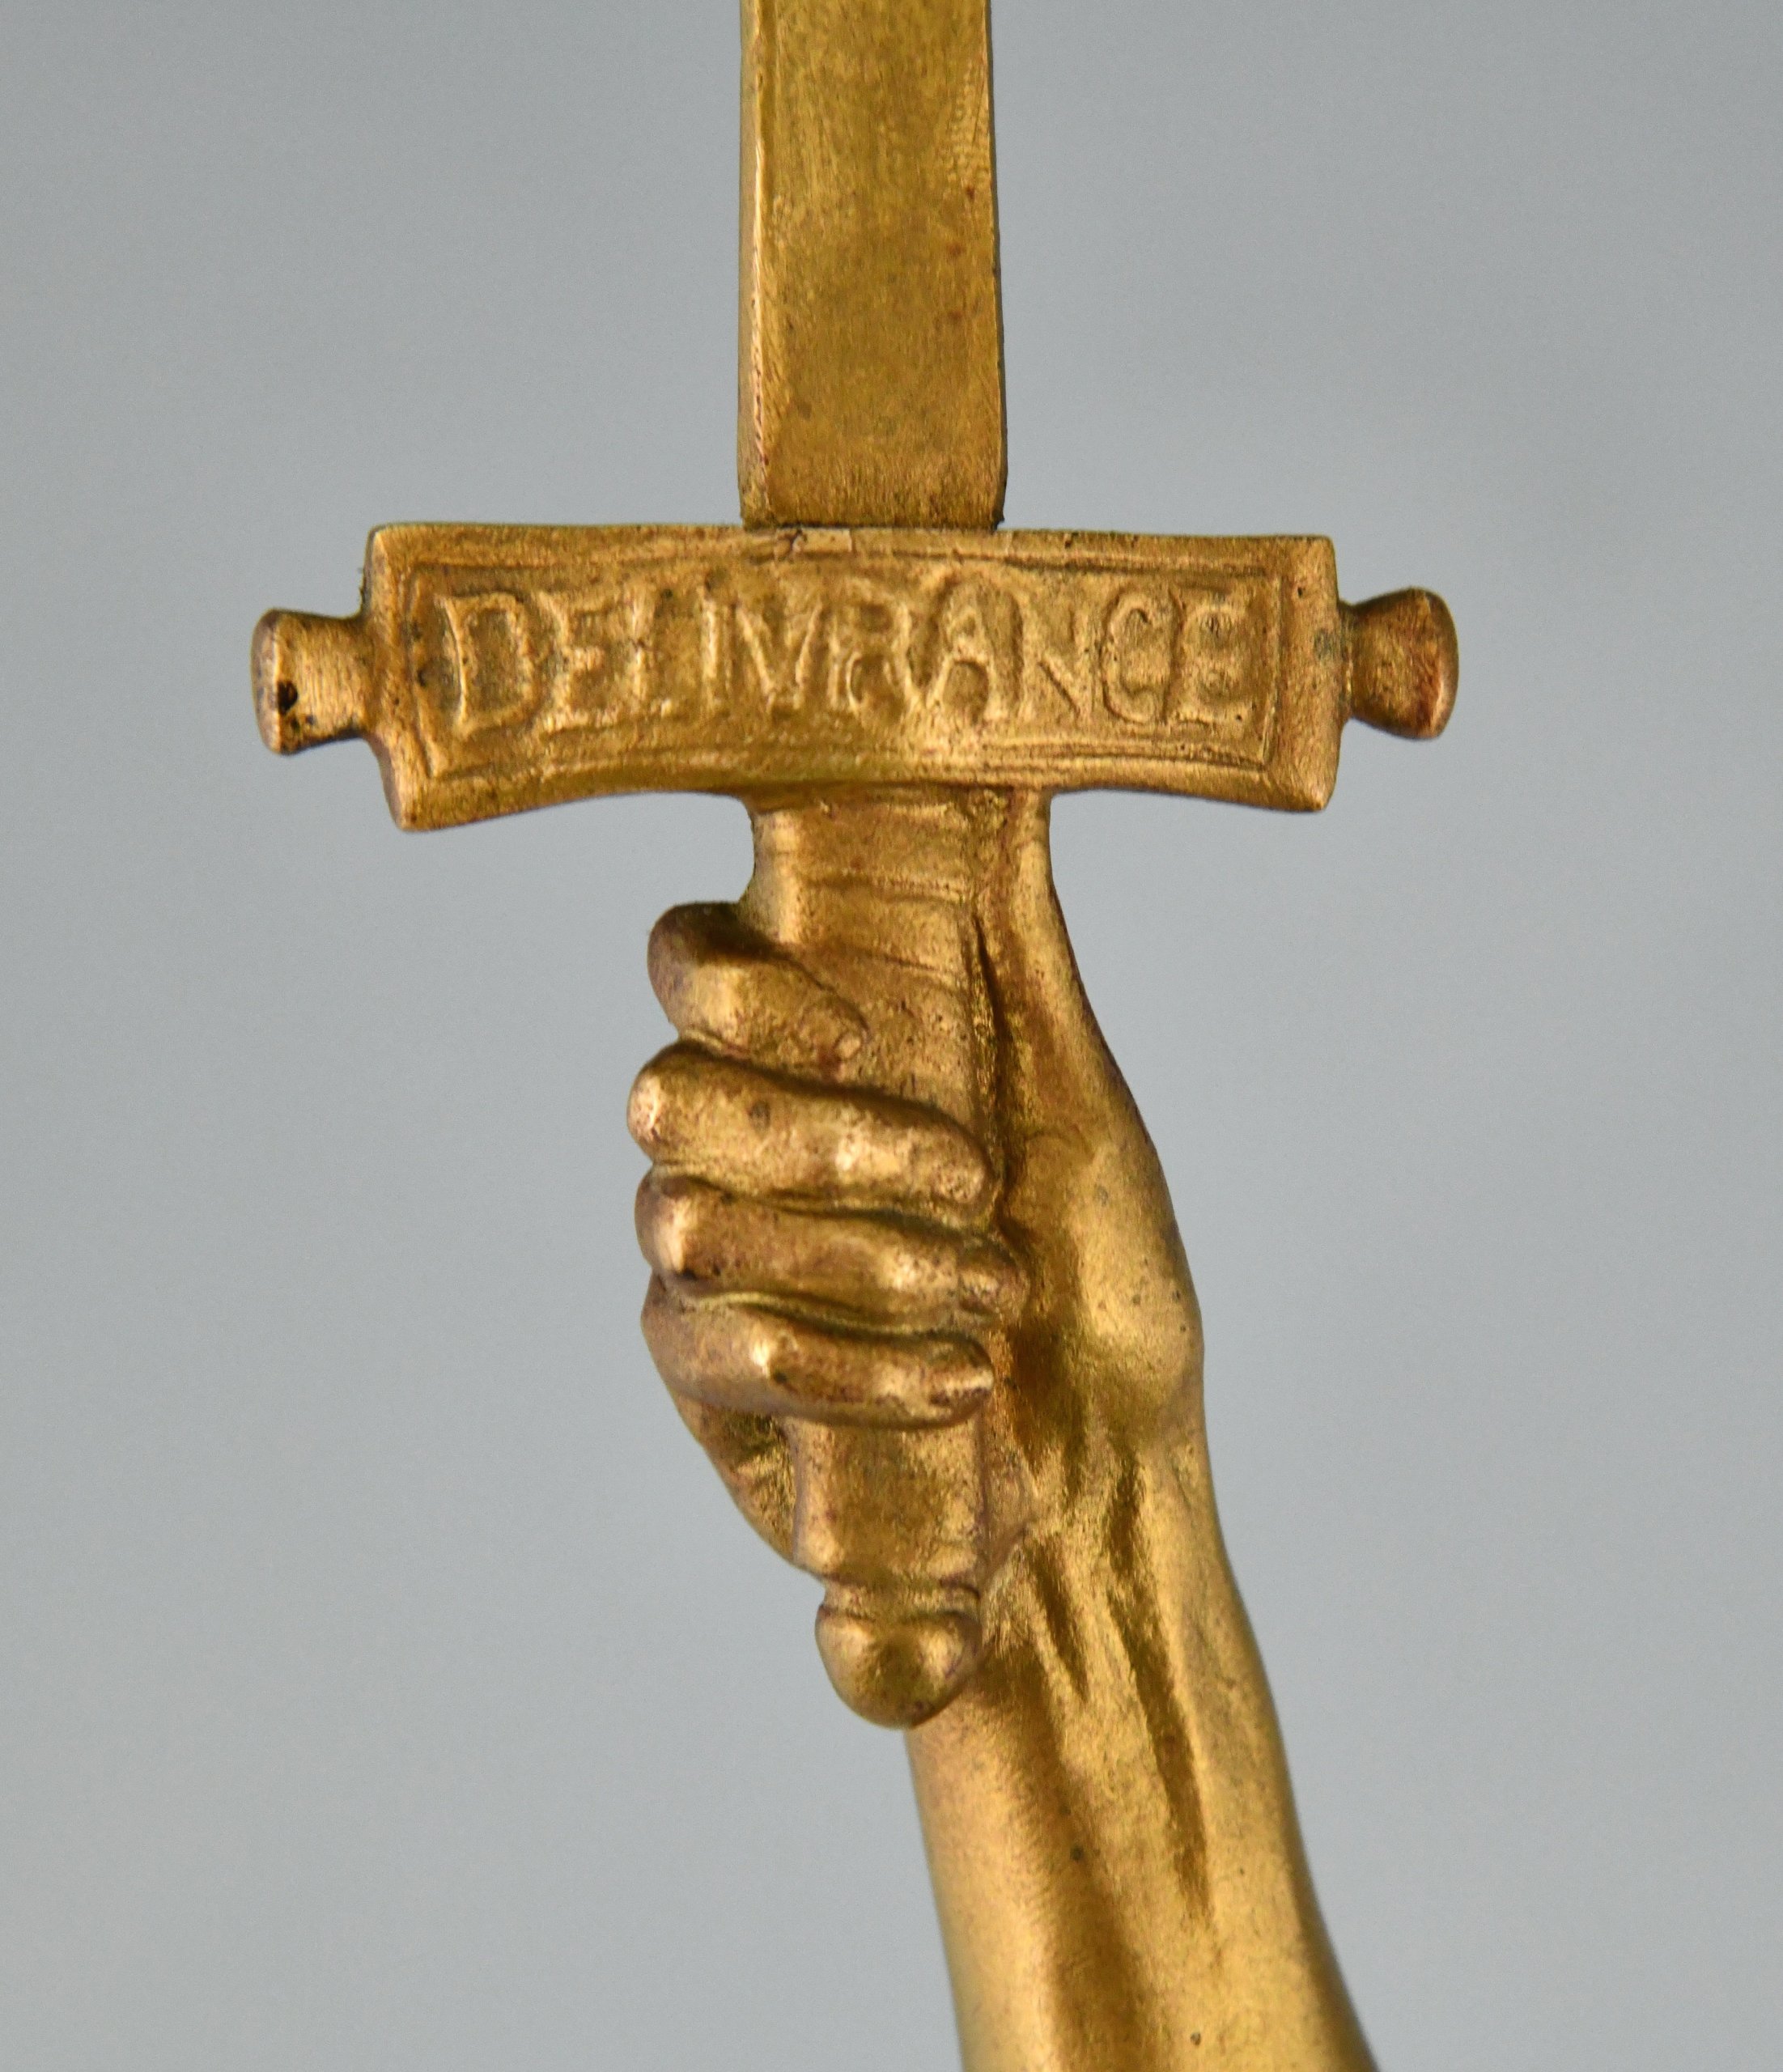 Deliverance Bronze Skulptur Frauenakt mit Schwert